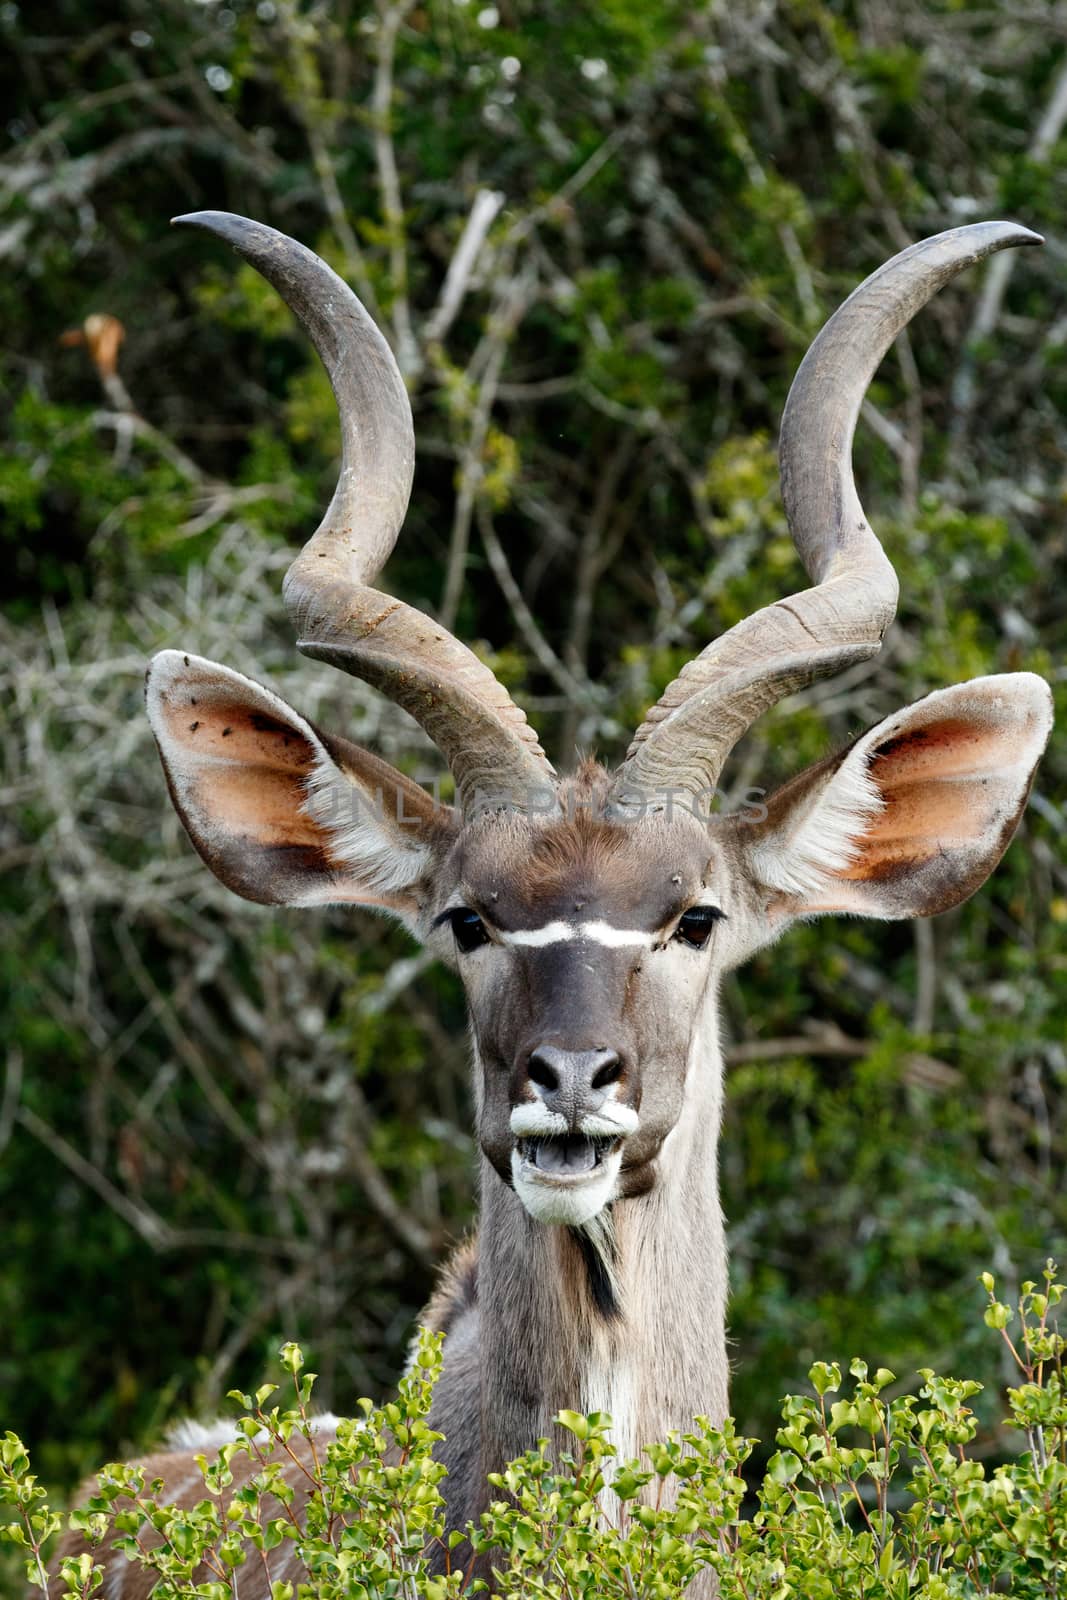 Smiling - Greater Kudu - Tragelaphus strepsiceros by markdescande